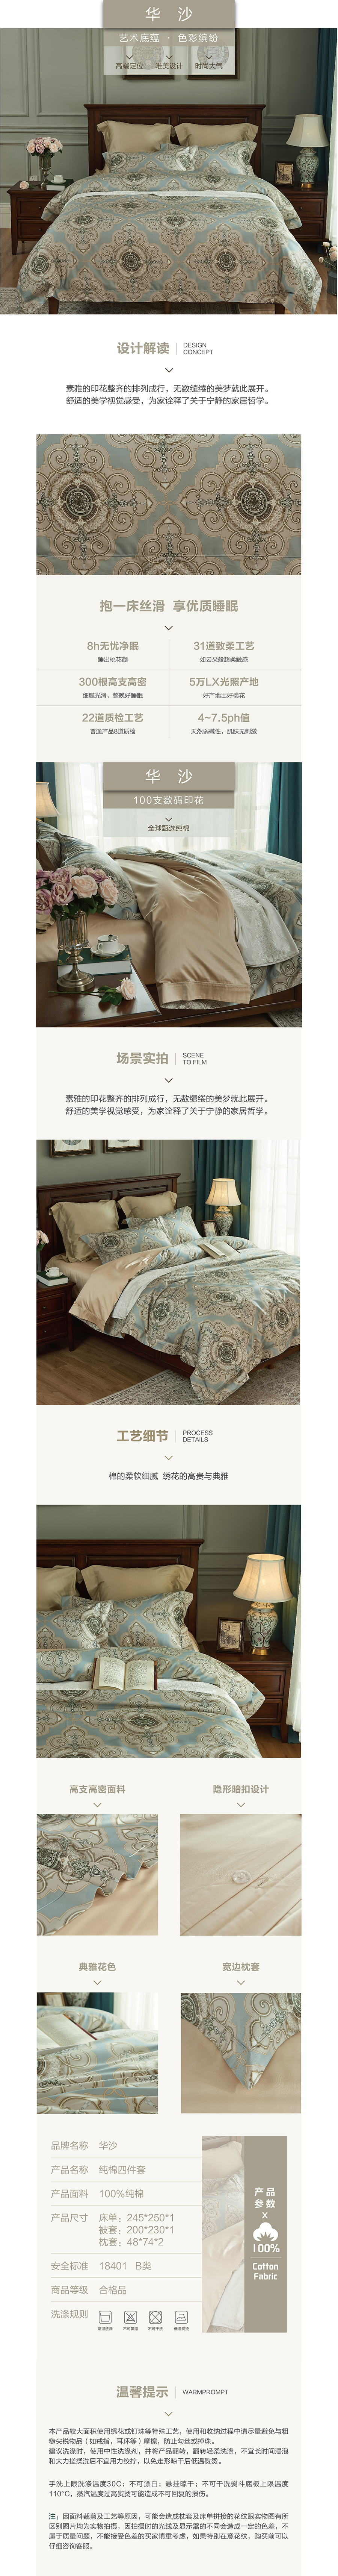 床上用品 纯棉四件套 蕾丝工艺 数码印花系列 华沙